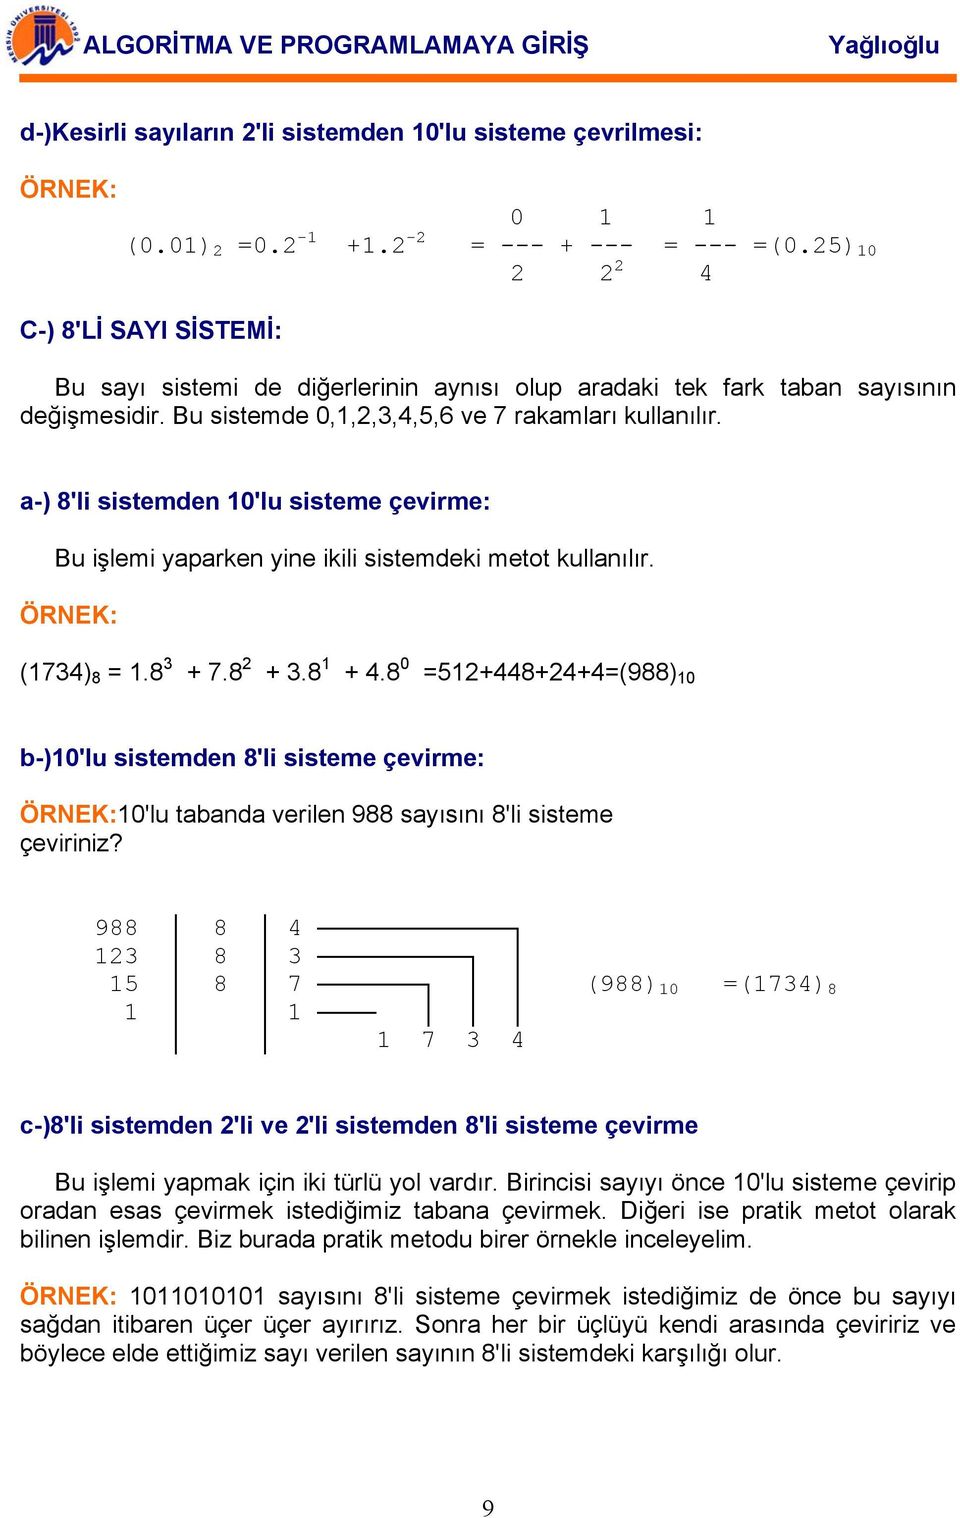 a-) 8'li sistemden 10'lu sisteme çevirme: Bu işlemi yaparken yine ikili sistemdeki metot kullanılır. (1734) 8 = 1.8 3 + 7.8 2 + 3.8 1 + 4.